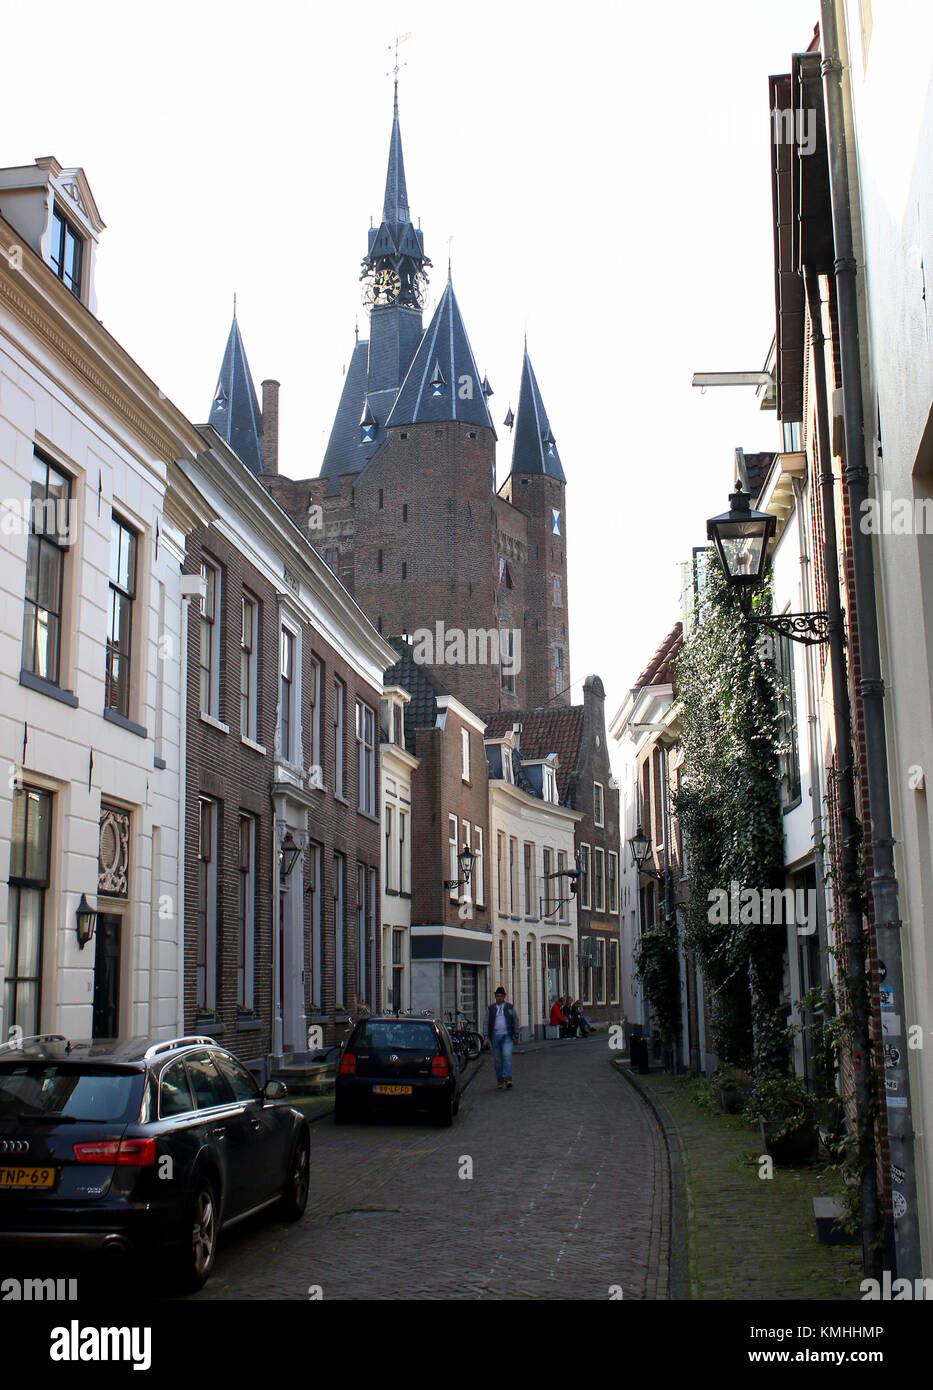 Mittelalterliche Sassenporrt City Gate, zentrale Zwolle, Niederlande, von walstraat gesehen. Stockfoto